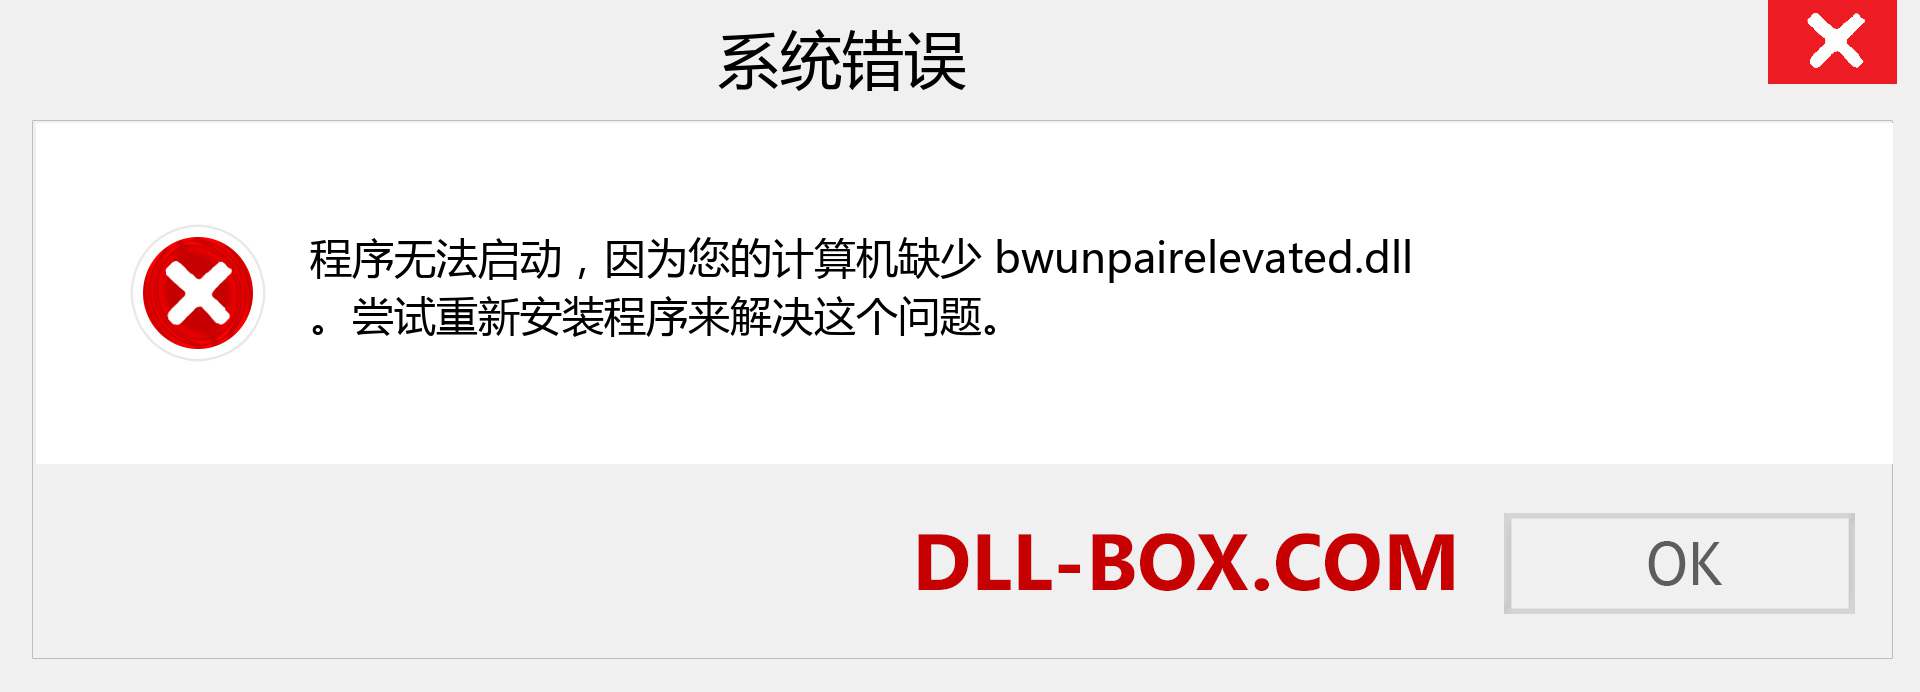 bwunpairelevated.dll 文件丢失？。 适用于 Windows 7、8、10 的下载 - 修复 Windows、照片、图像上的 bwunpairelevated dll 丢失错误